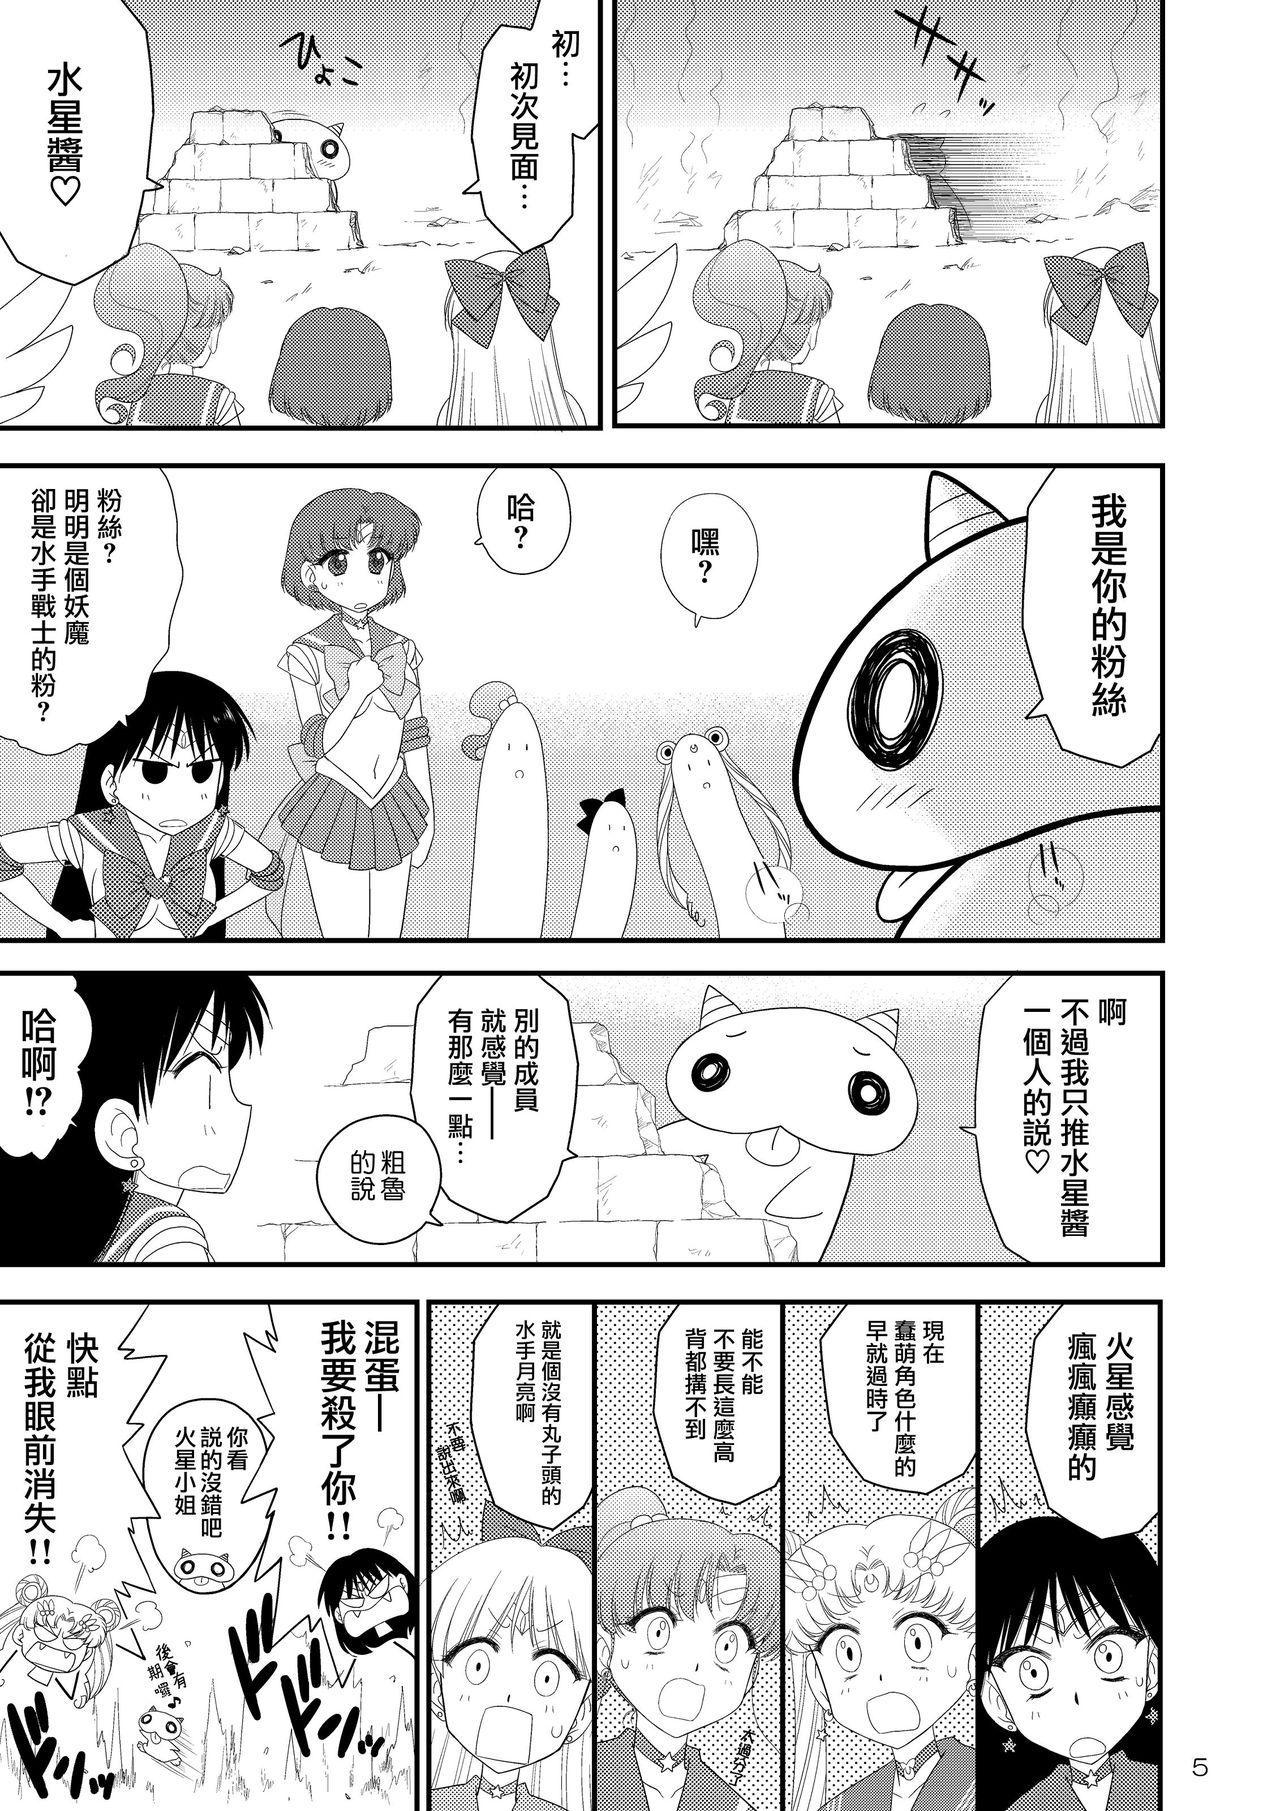 Sentones Kigurumi no Naka wa Massakari - Sailor moon Para - Page 6